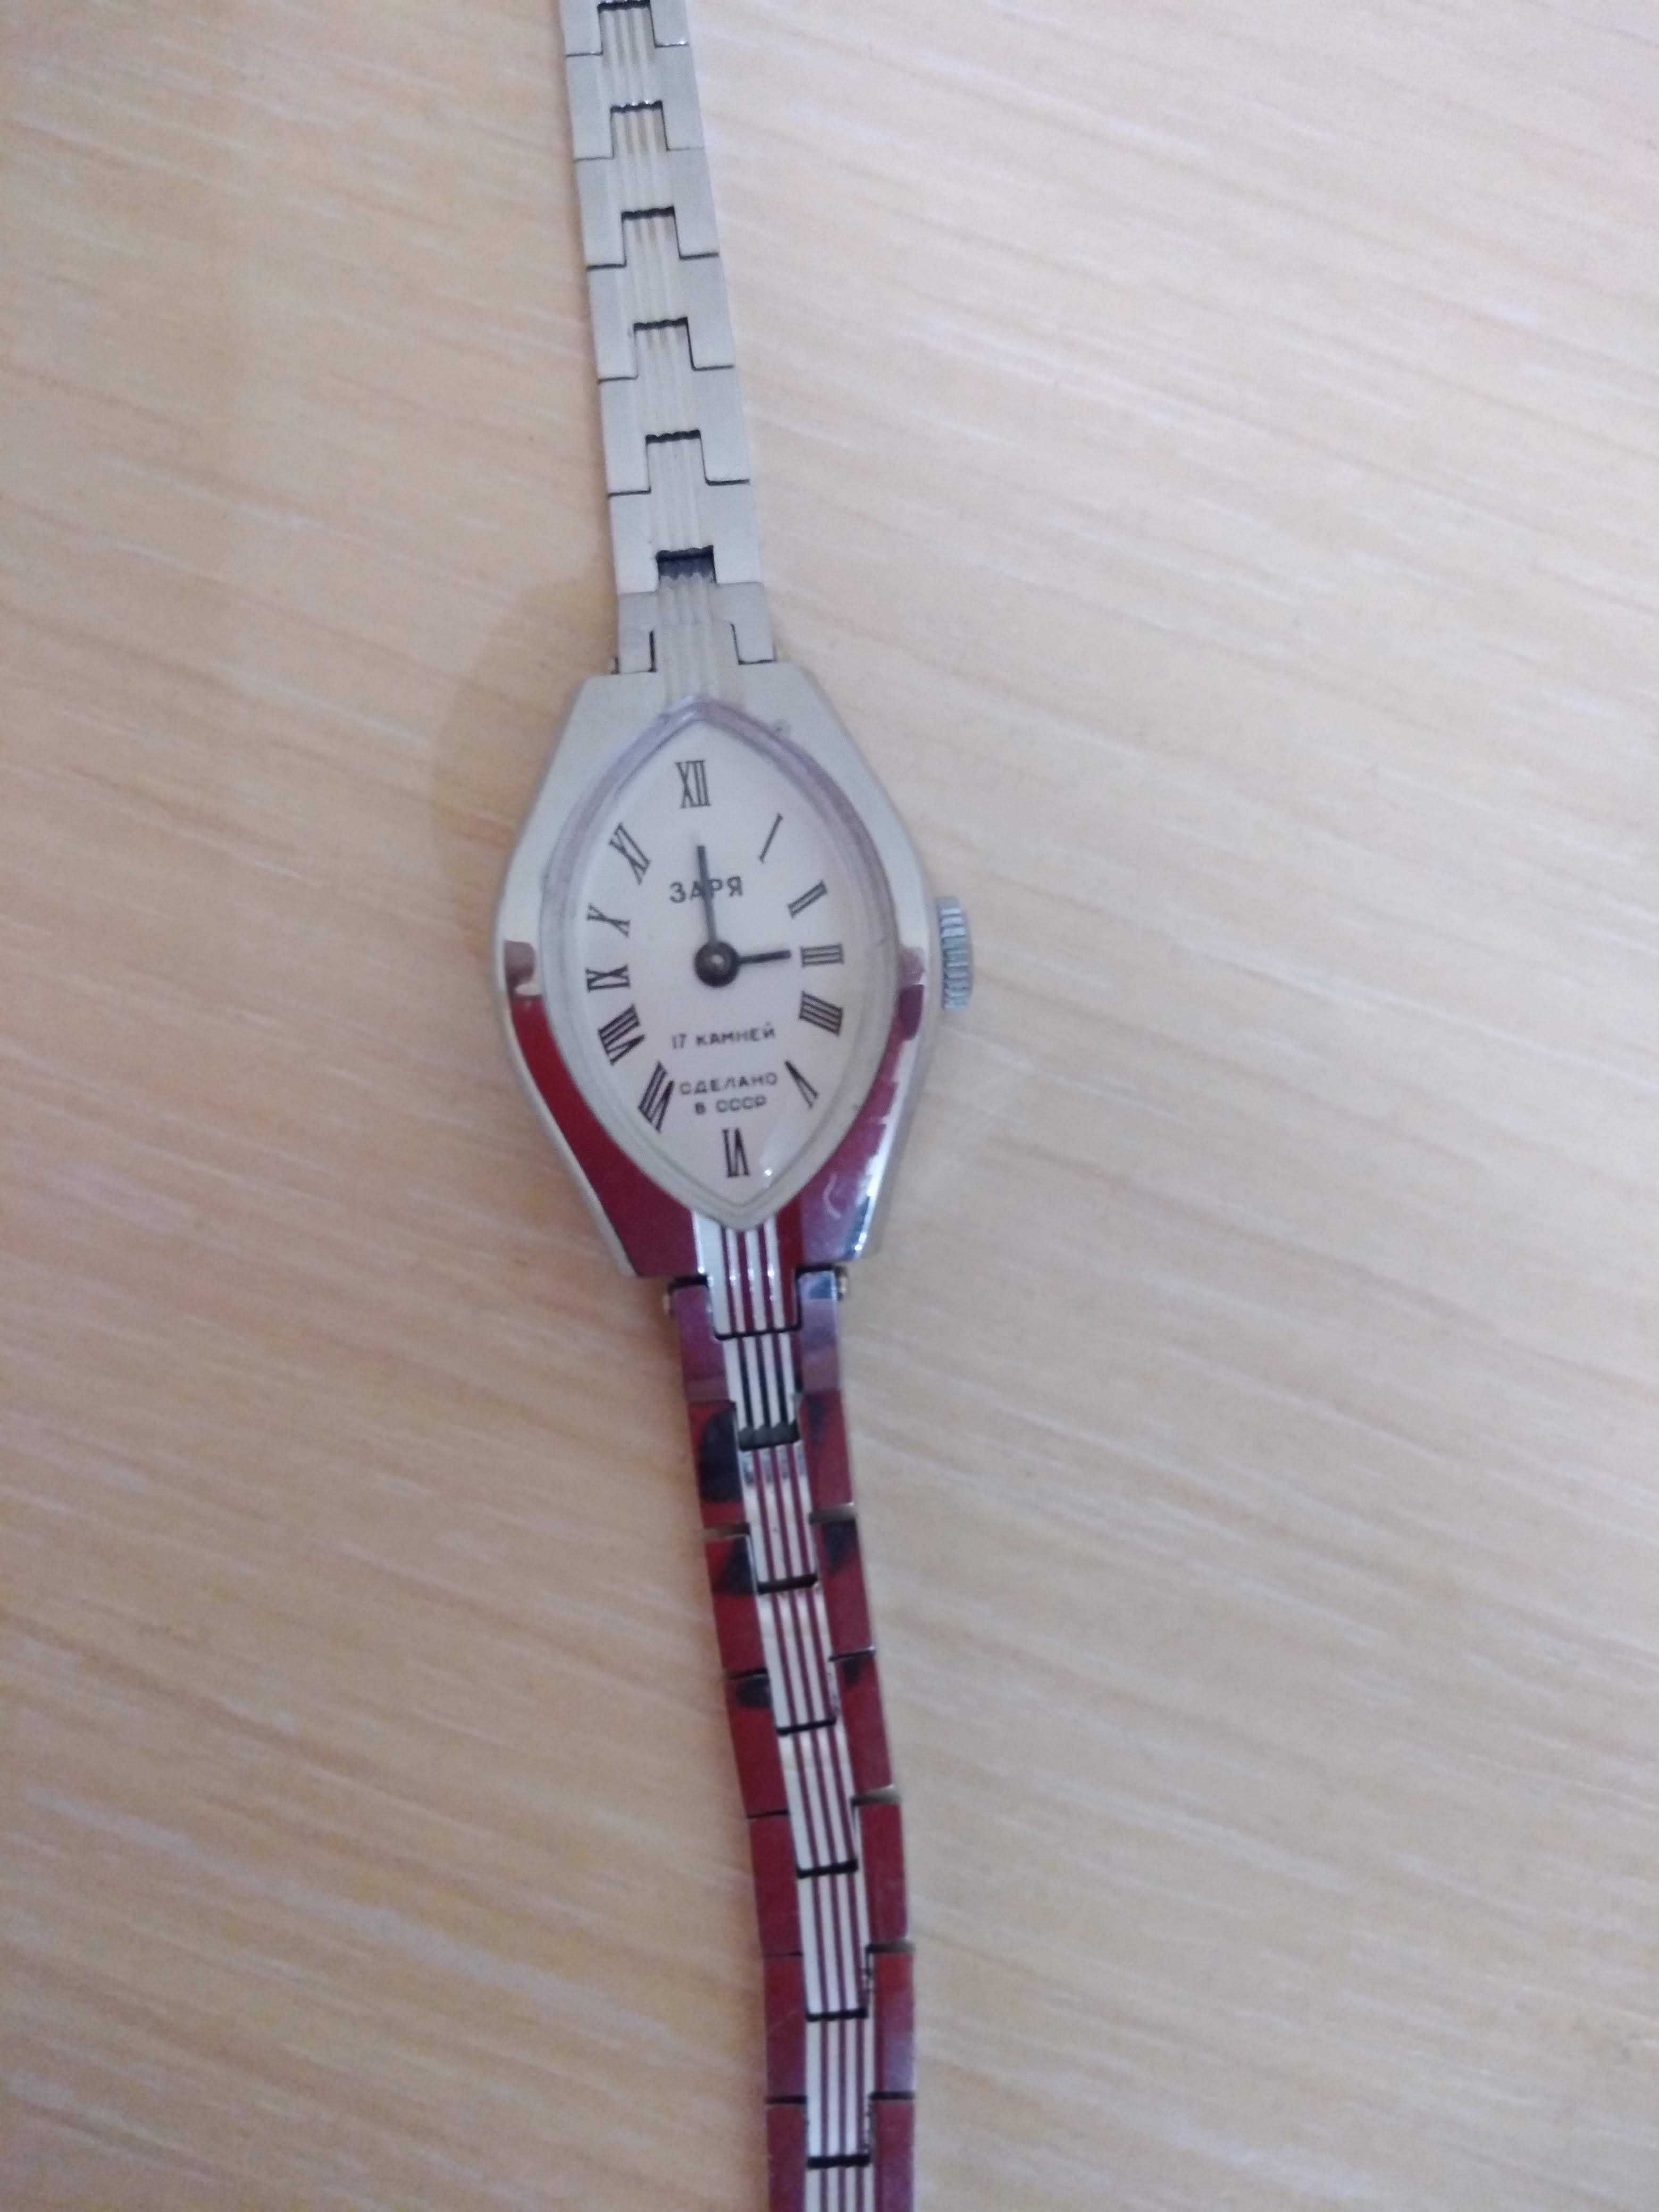 Нові годинники "Заря" золотисті та сріблясті. Зроблено у СРСР